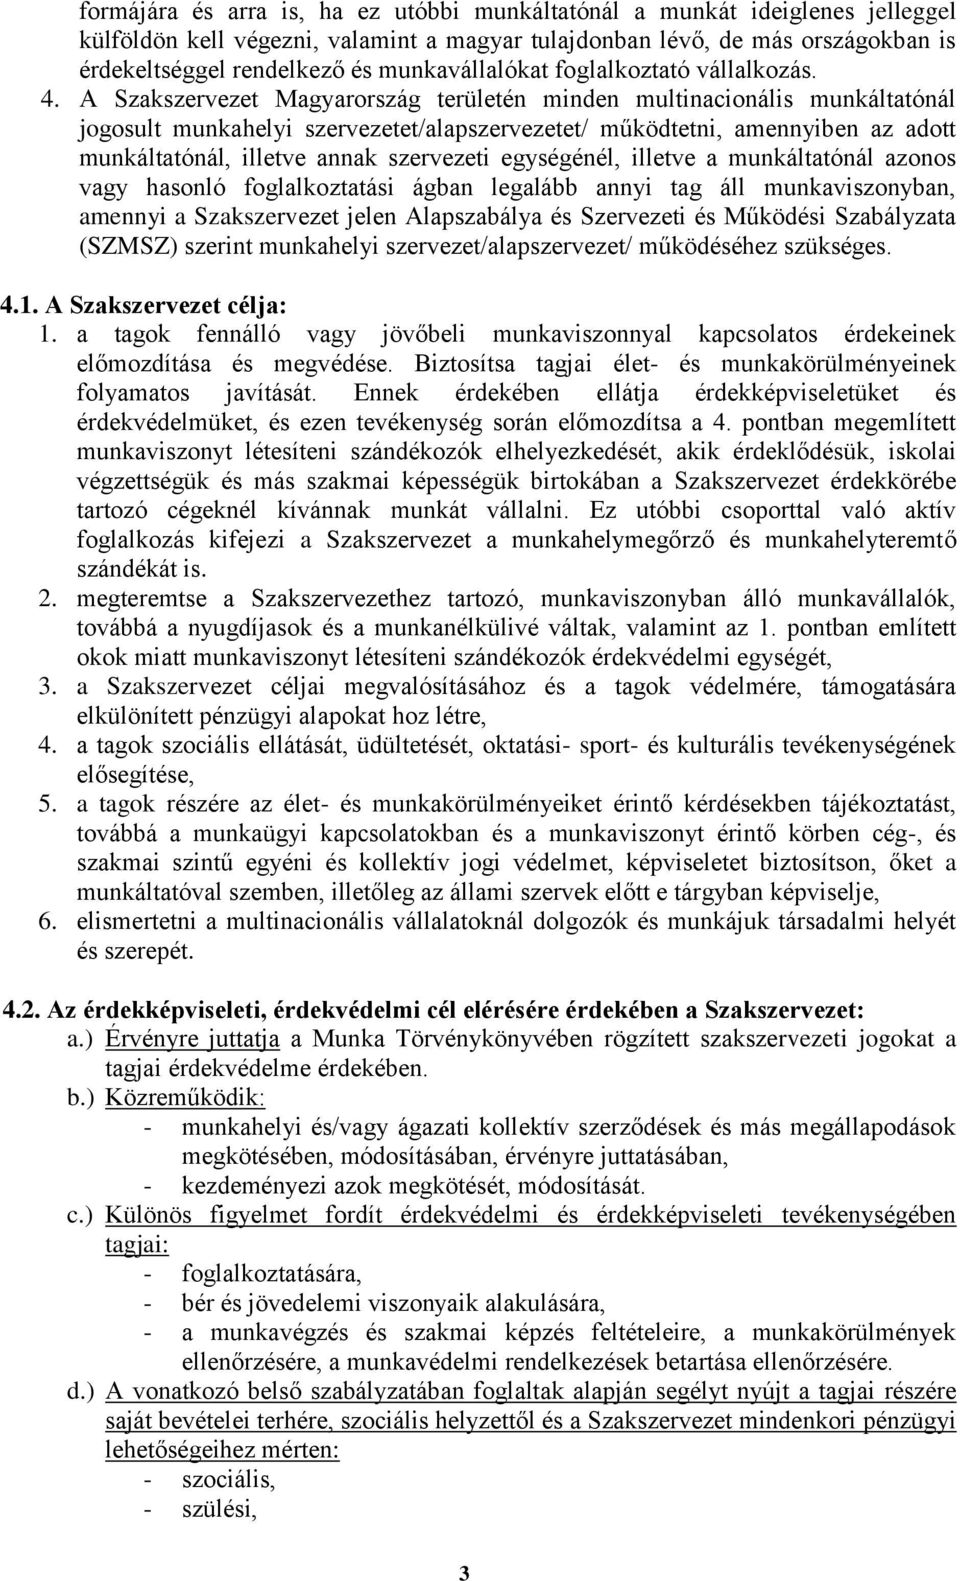 A Szakszervezet Magyarország területén minden multinacionális munkáltatónál jogosult munkahelyi szervezetet/alapszervezetet/ működtetni, amennyiben az adott munkáltatónál, illetve annak szervezeti